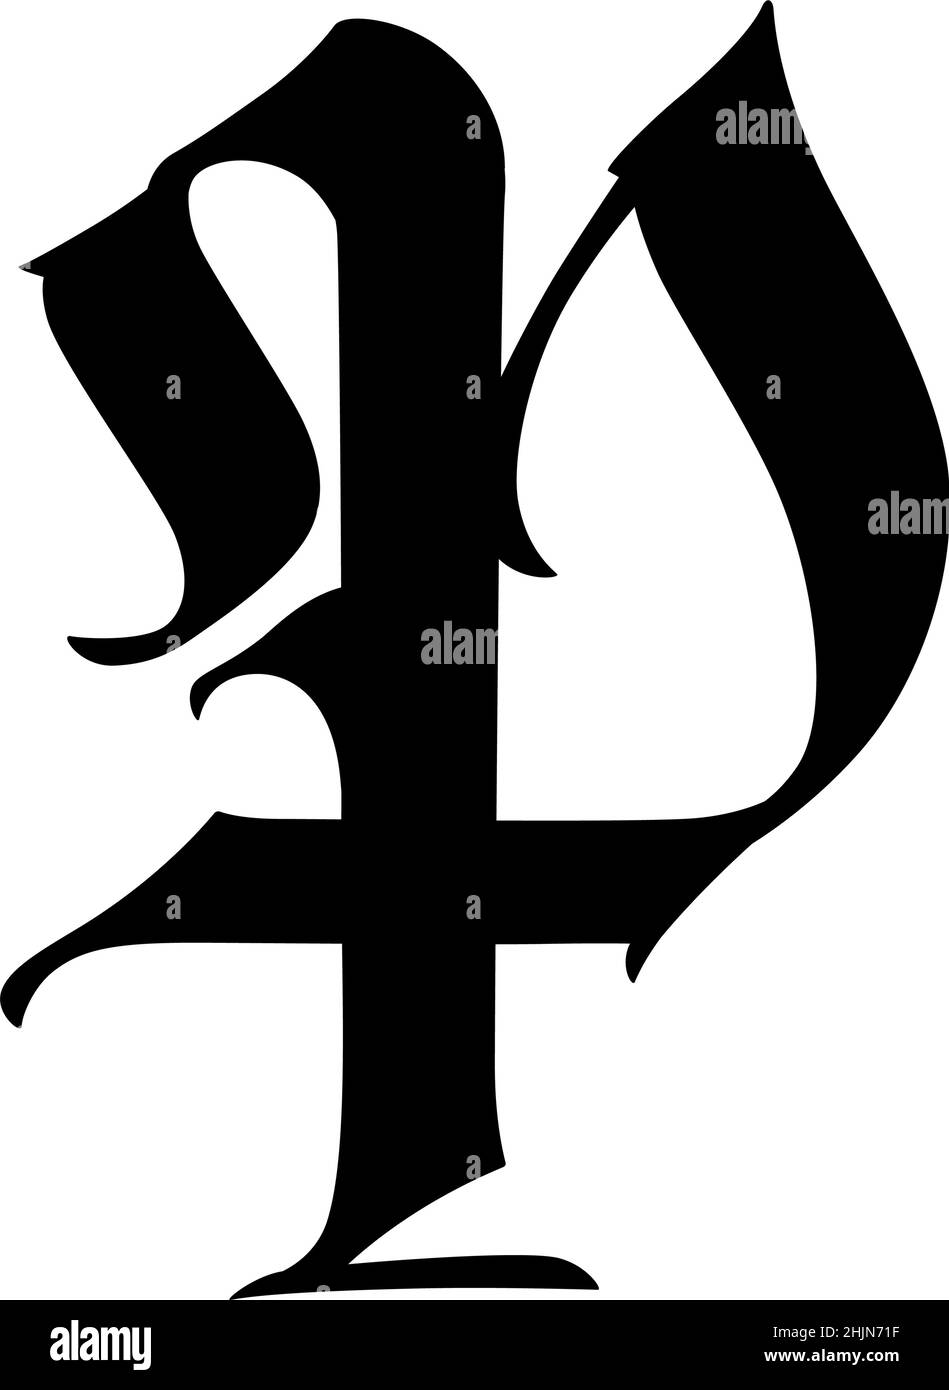 Lettre P, dans le style gothique. Vecteur. L'alphabet. Le symbole est isolé sur un fond blanc. De la calligraphie et de lettrage. Lettre en latin médiéval. Logo Illustration de Vecteur